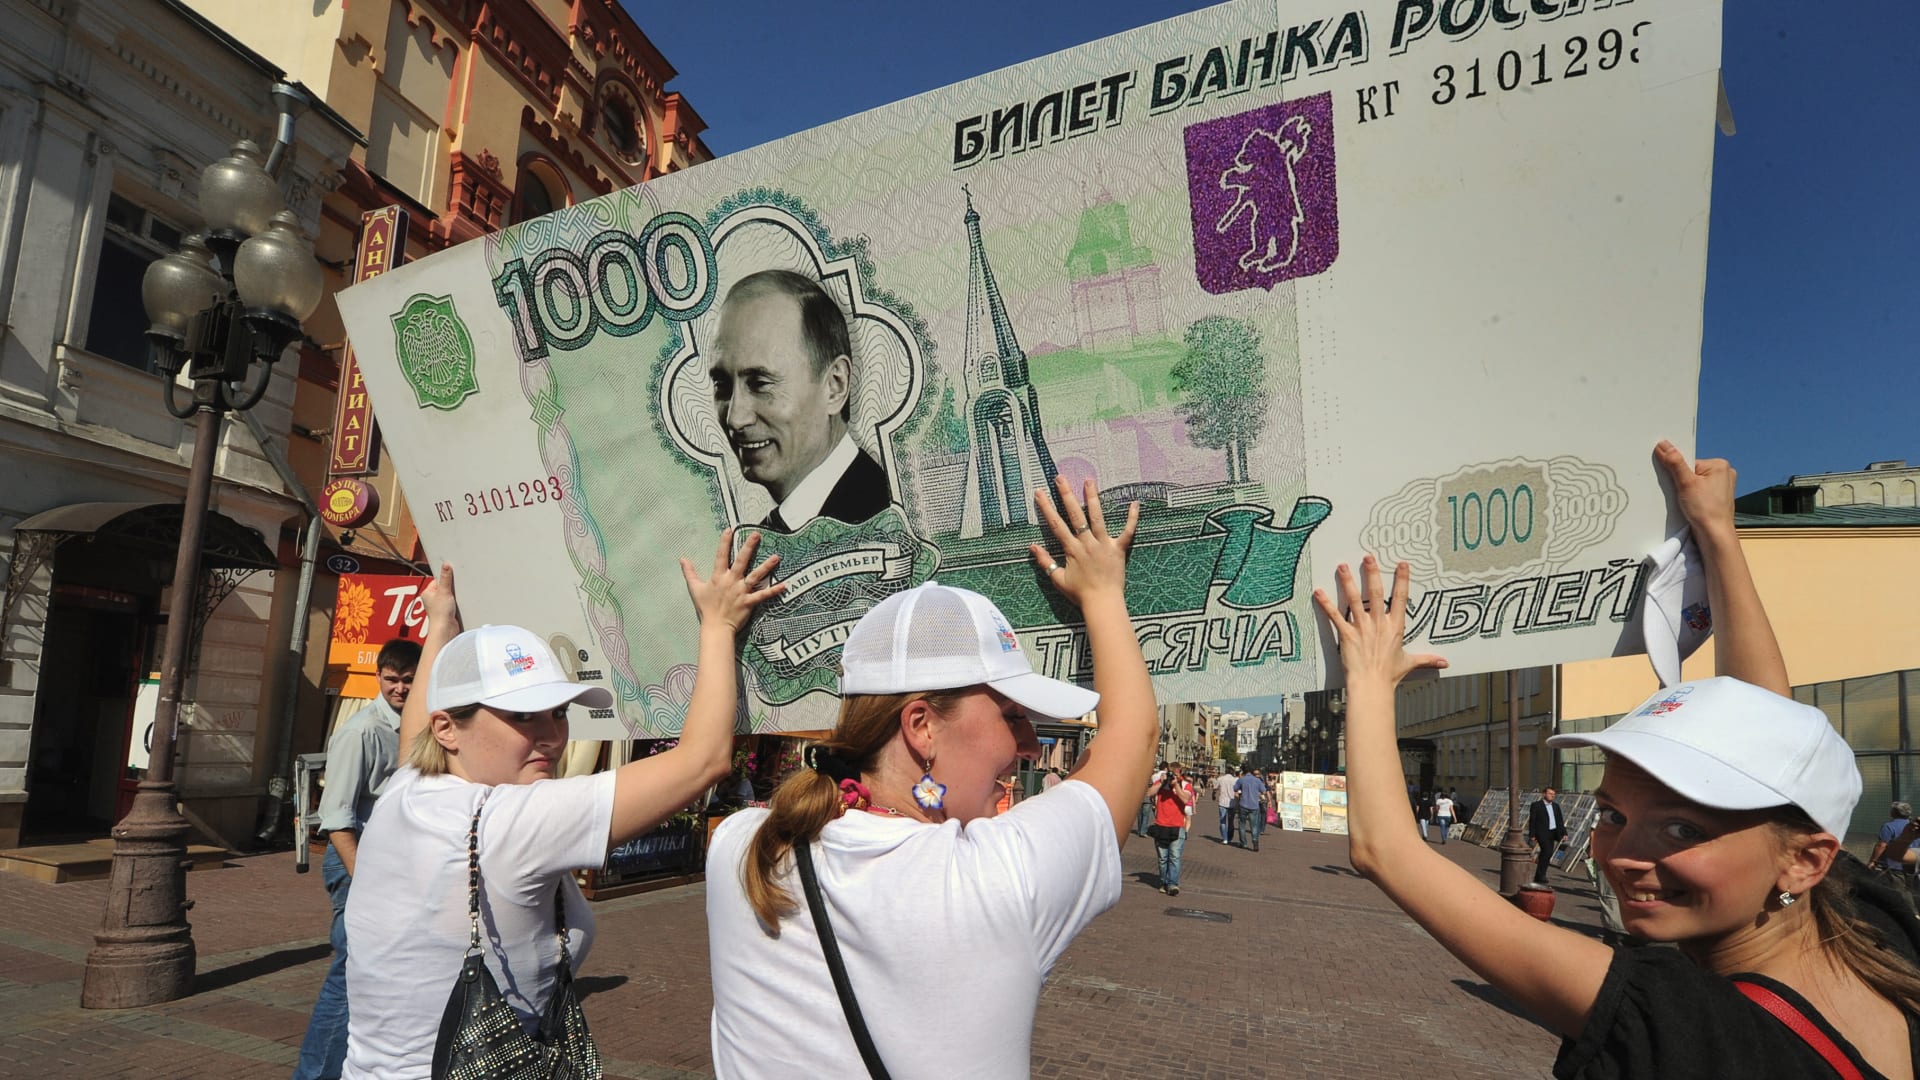 صورة أرشيفية لنشطاء يحملون العملةالروسية وقد وضع عليها صورة بوتين العام 2011